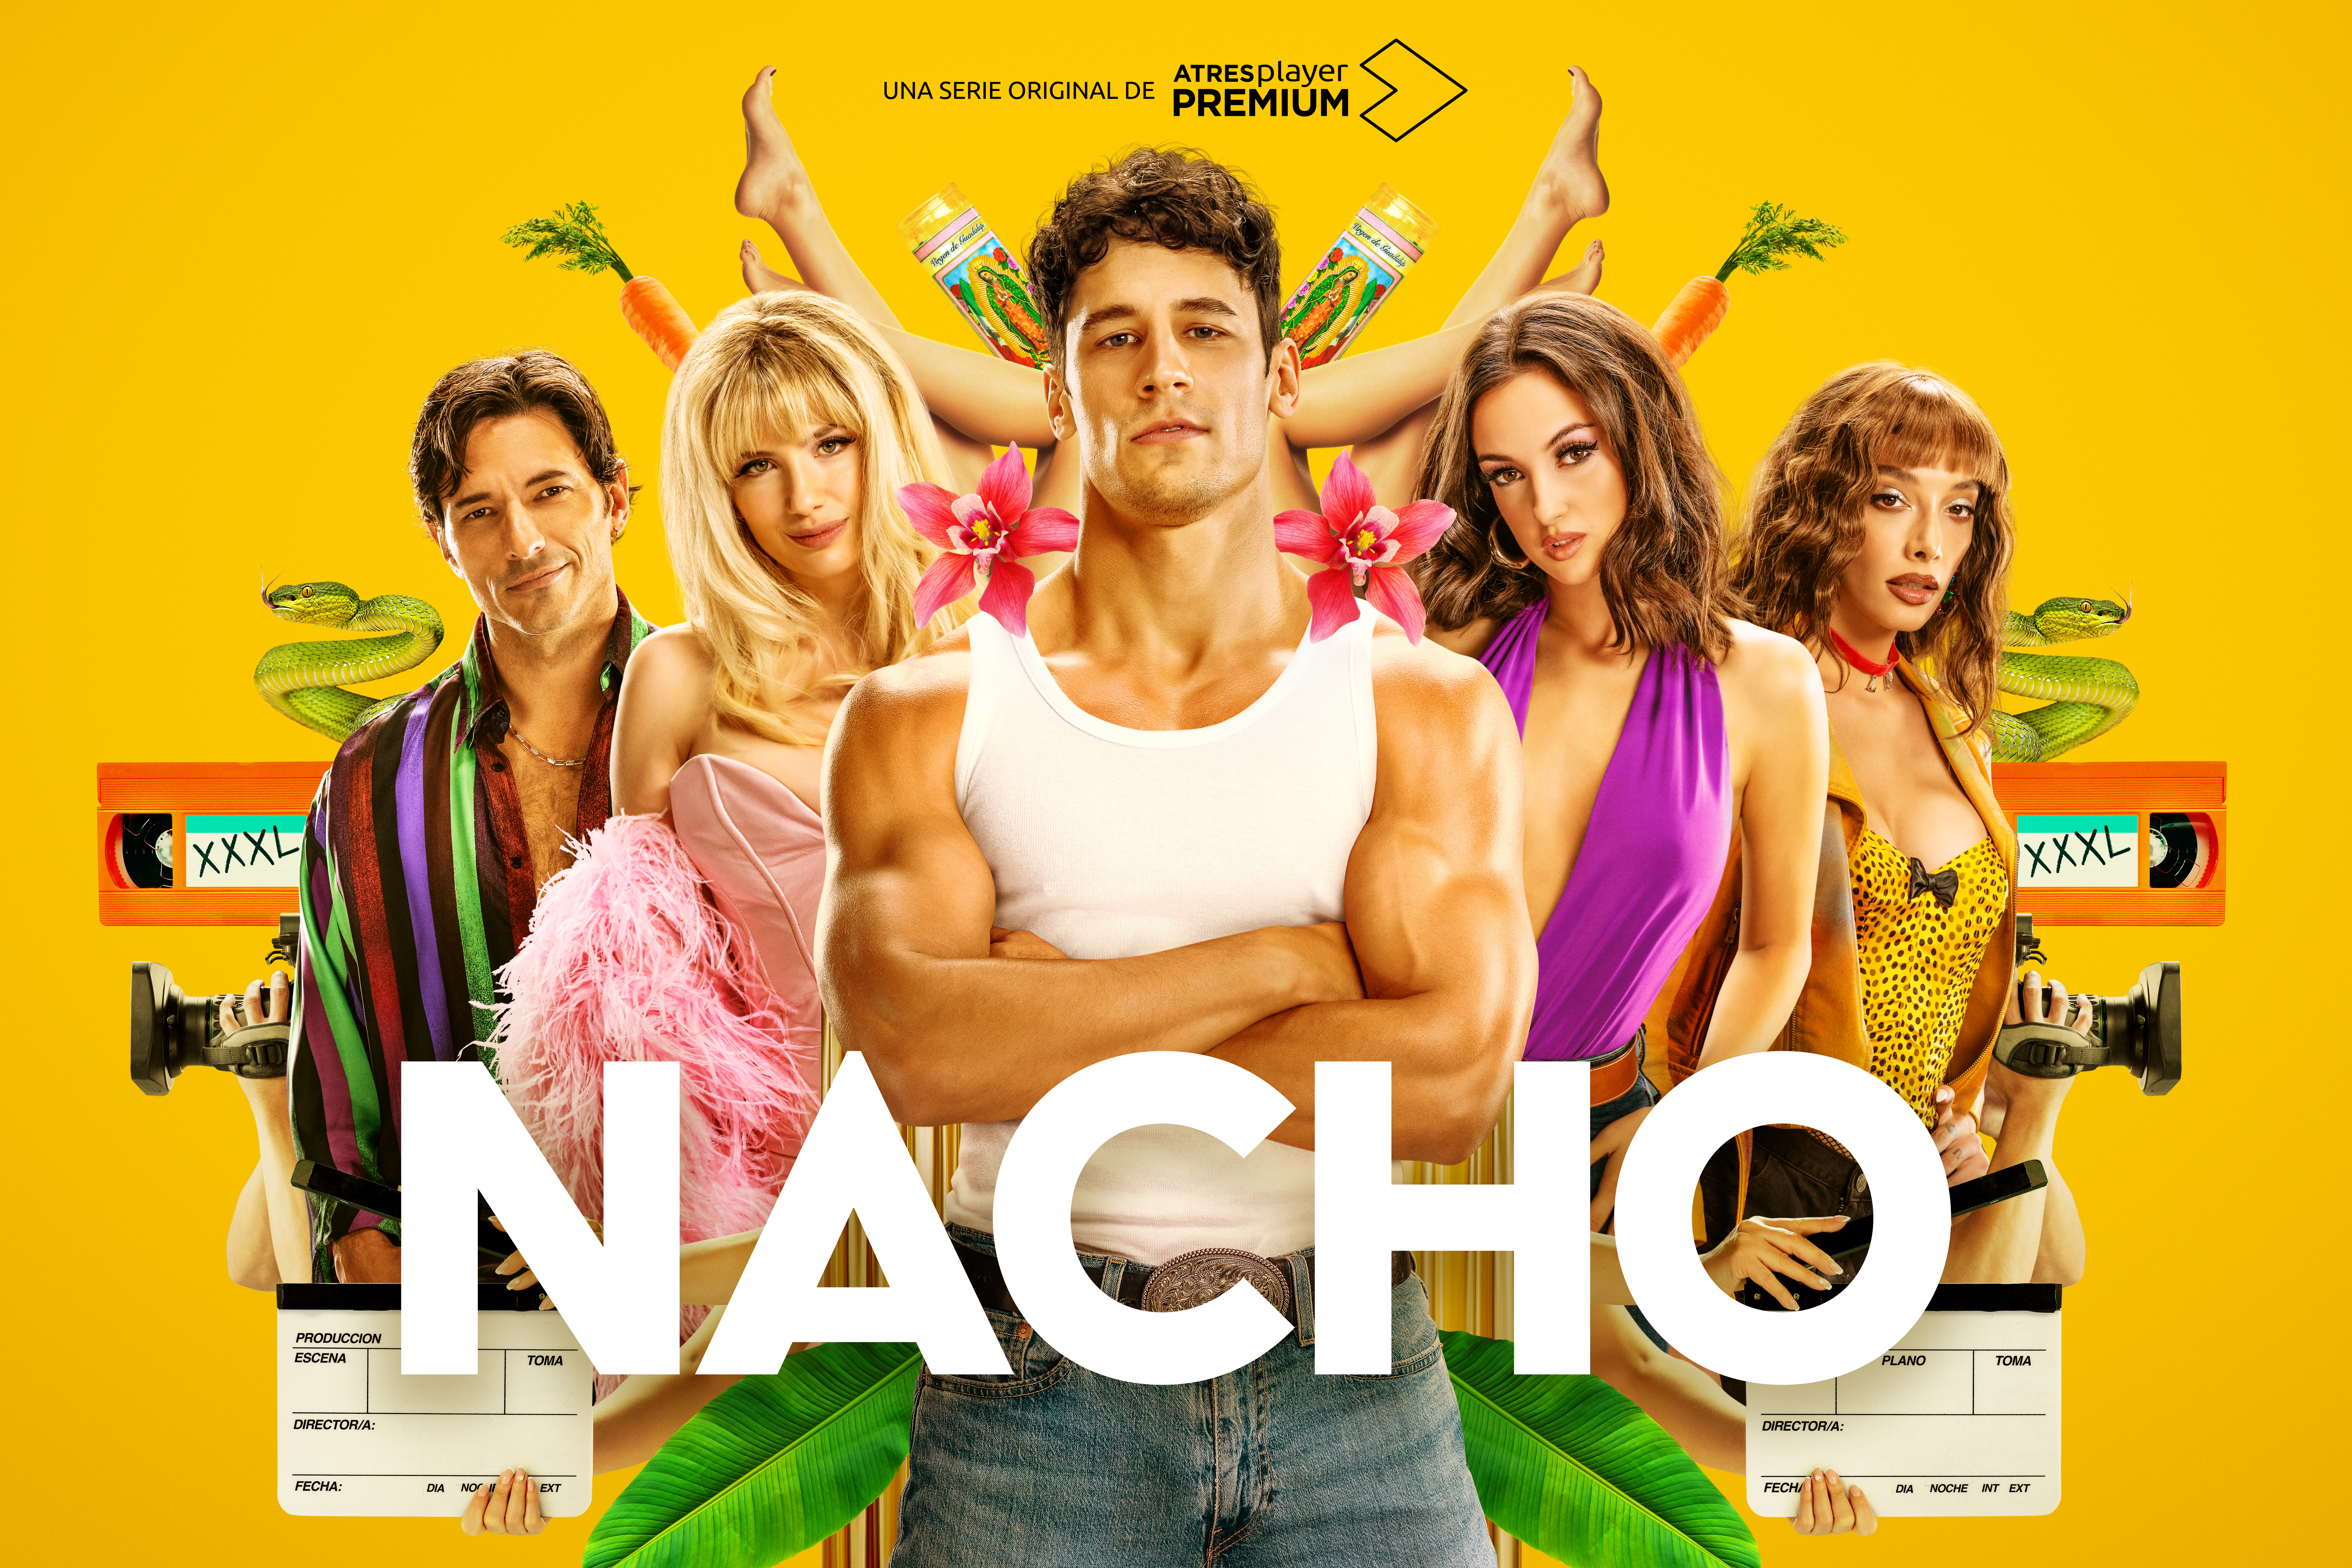 'Nacho' llegará a ATRESplayer PREMIUM el próximo 5 de marzo.